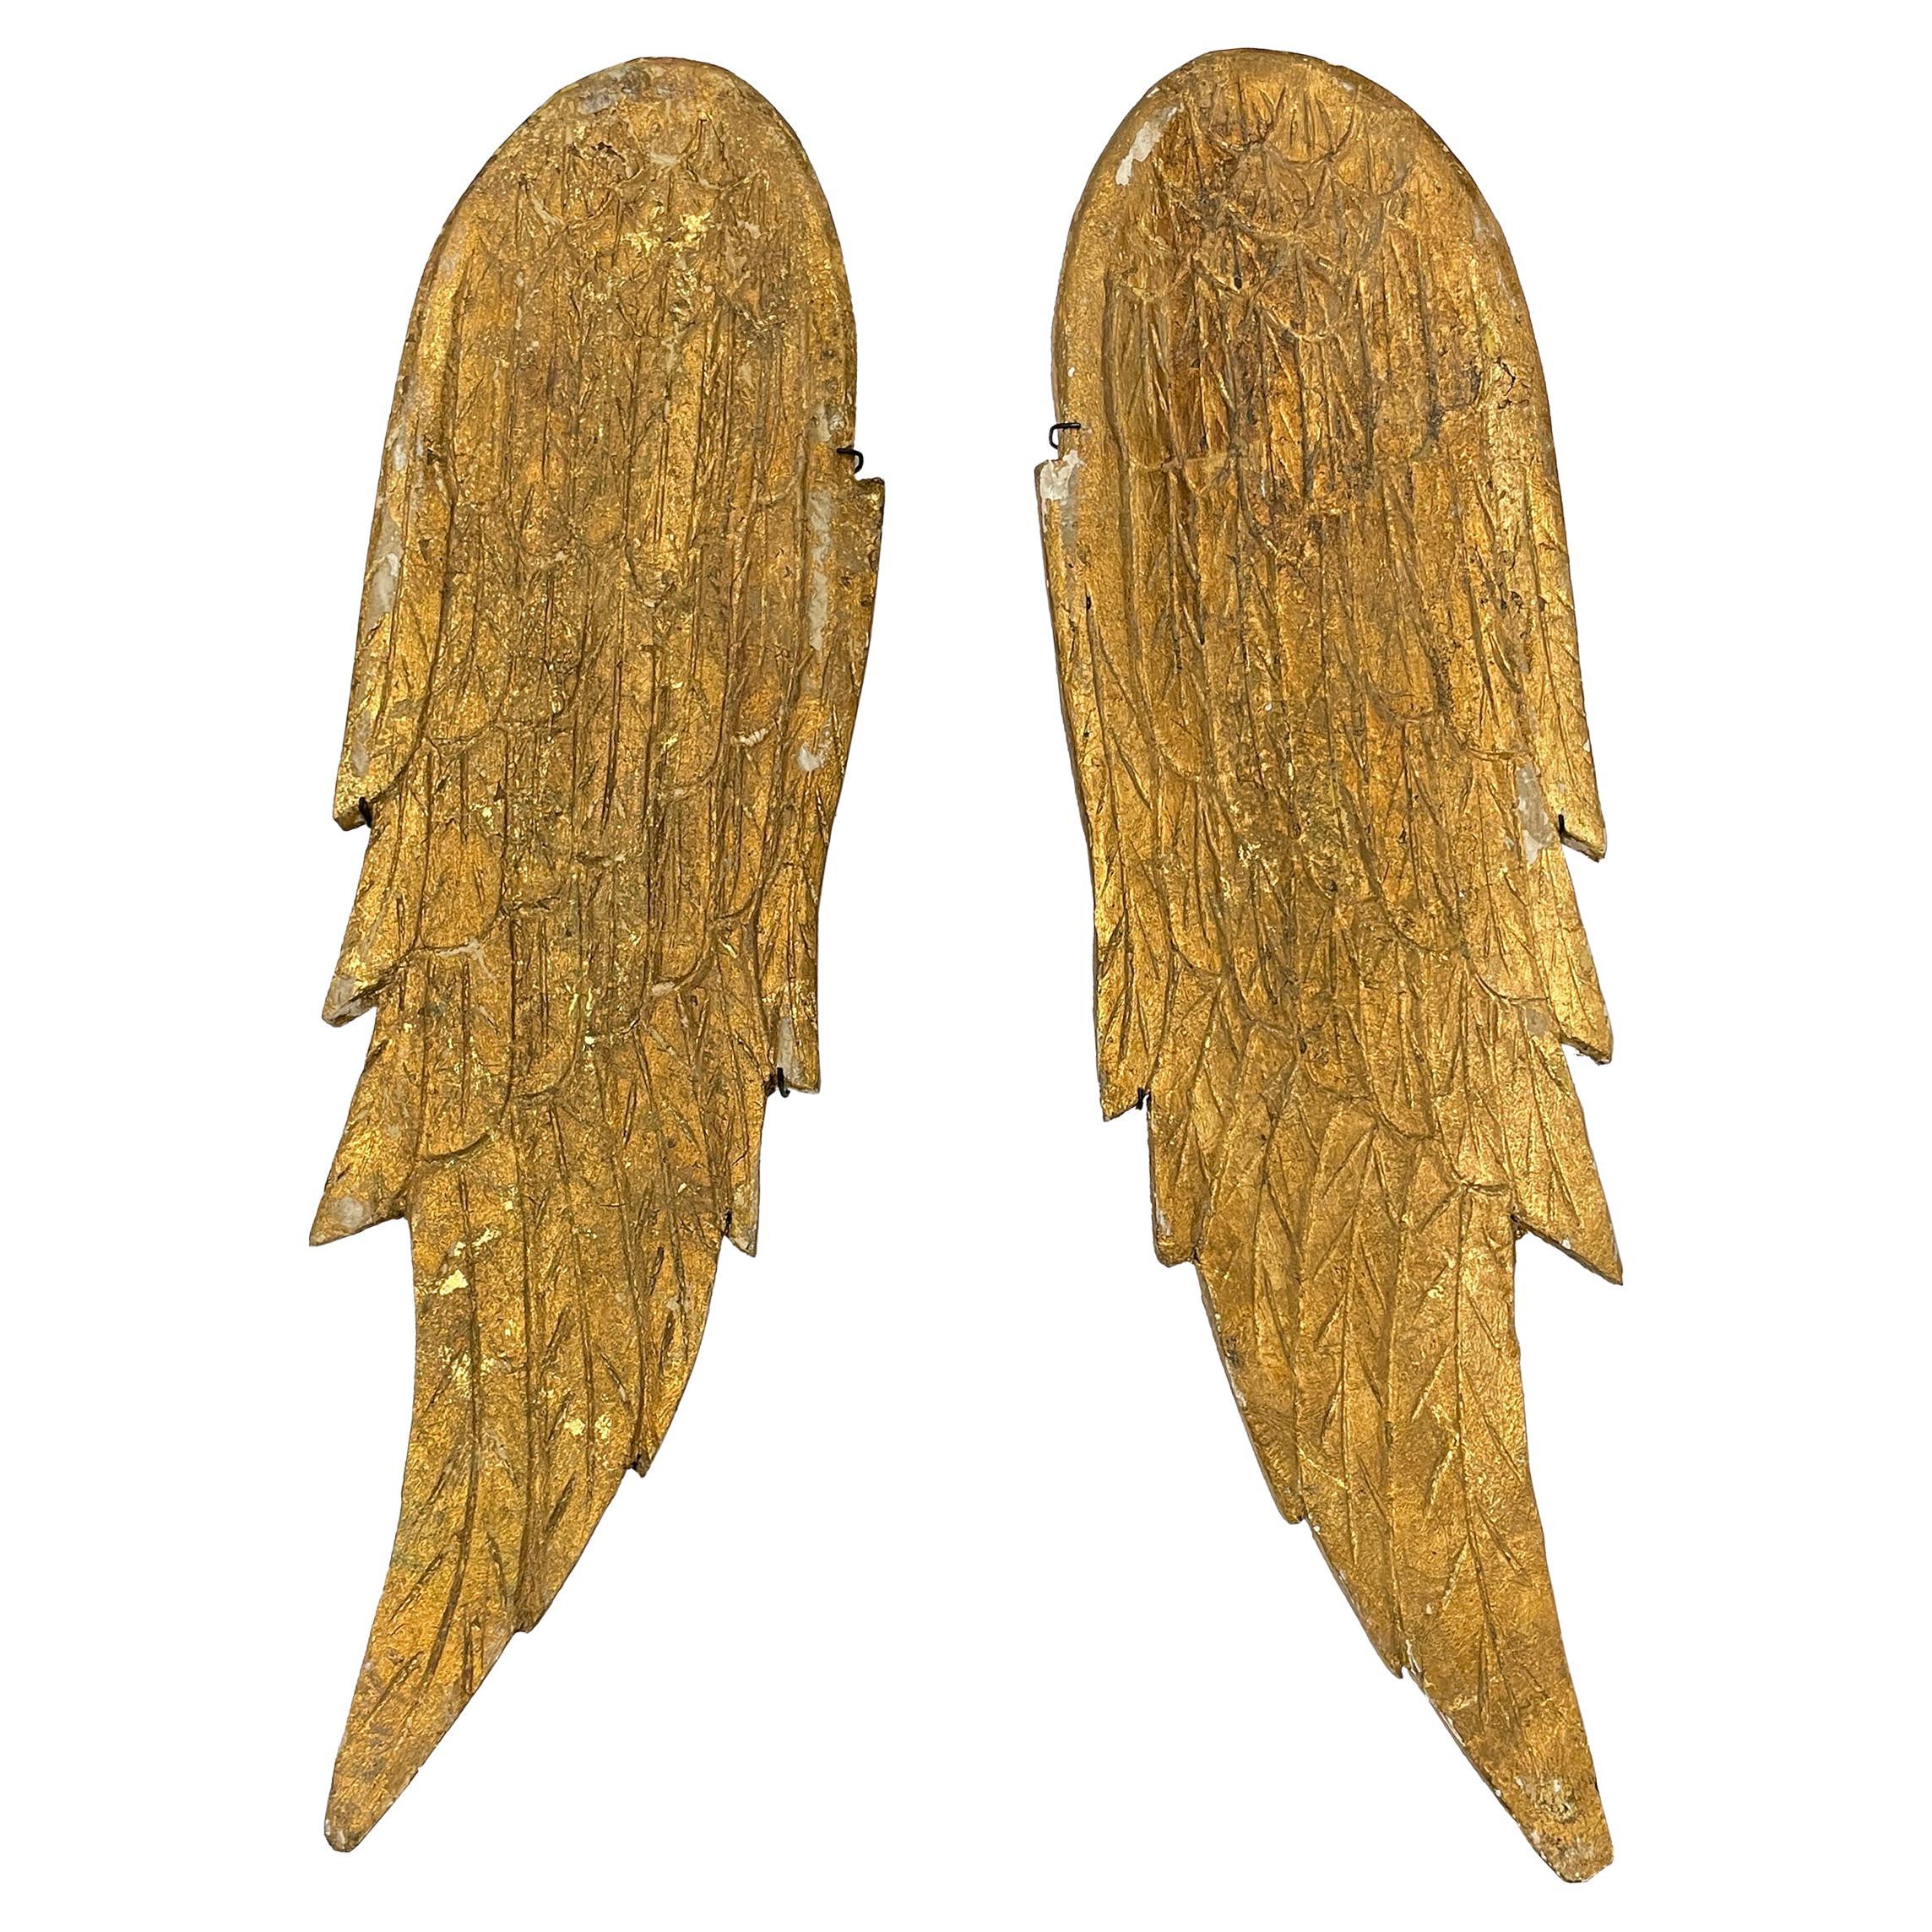 Pair of Gilded Wood Angel Wings on Custom Wall Mounts